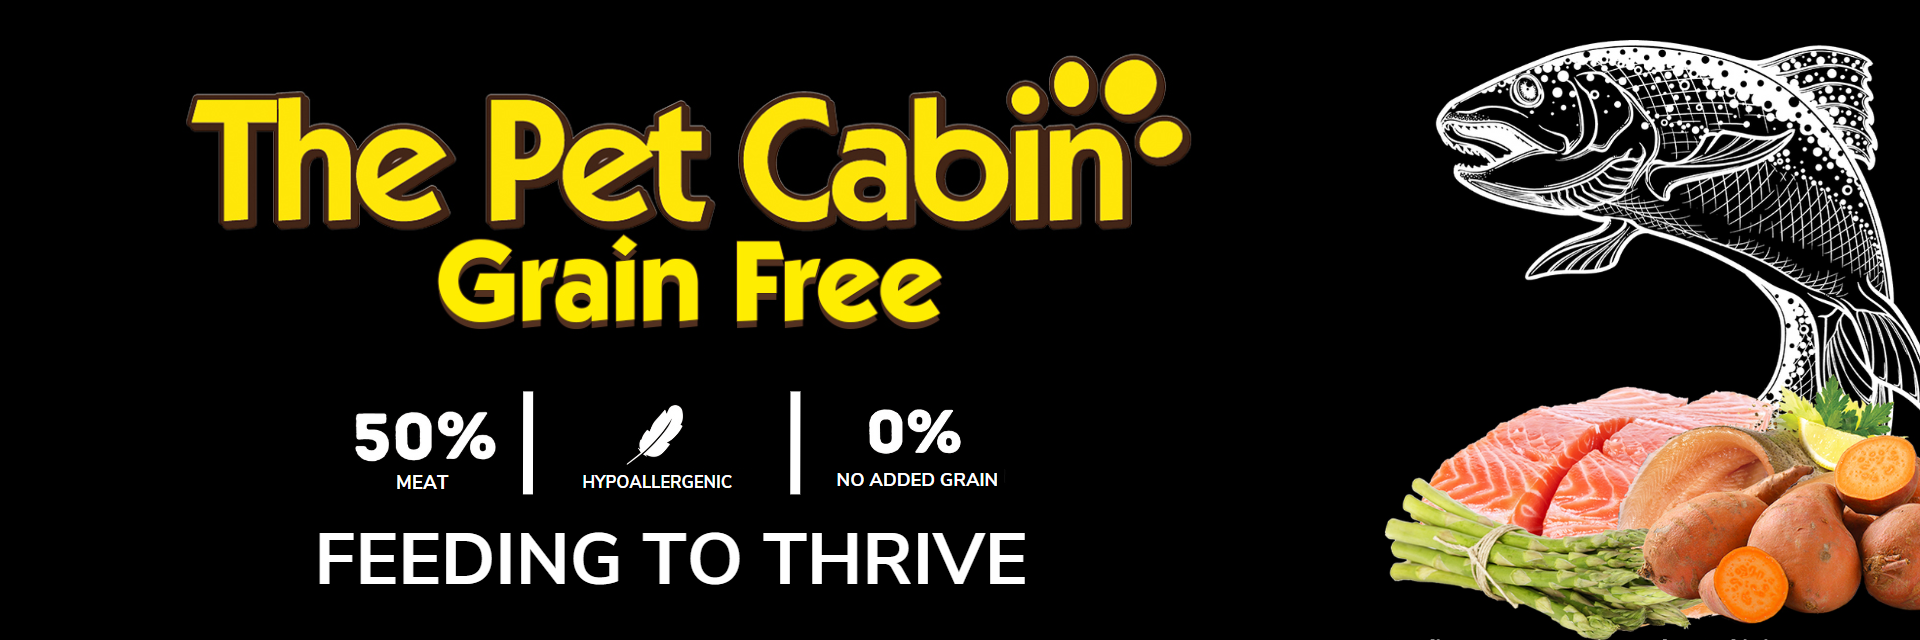 The Pet Cabin Grain Free